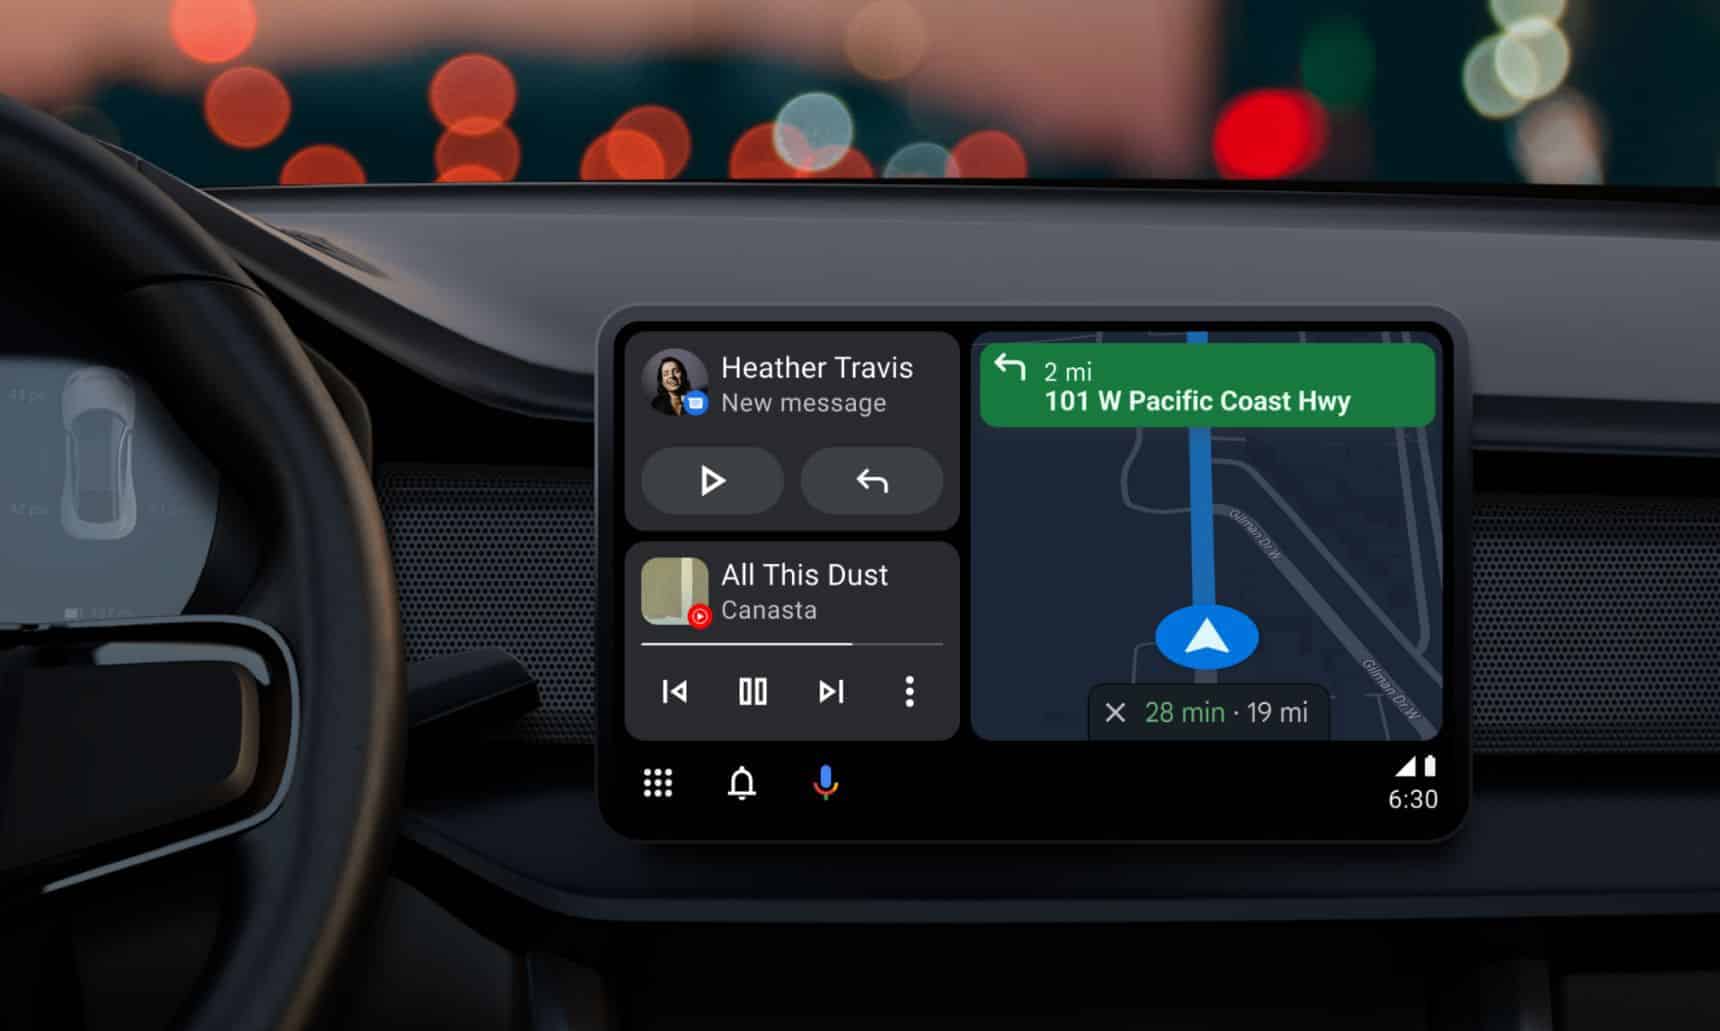 Android Auto rationalise son lecteur multimédia, juste à temps pour votre prochain voyage en voiture android auto split screen hero 1